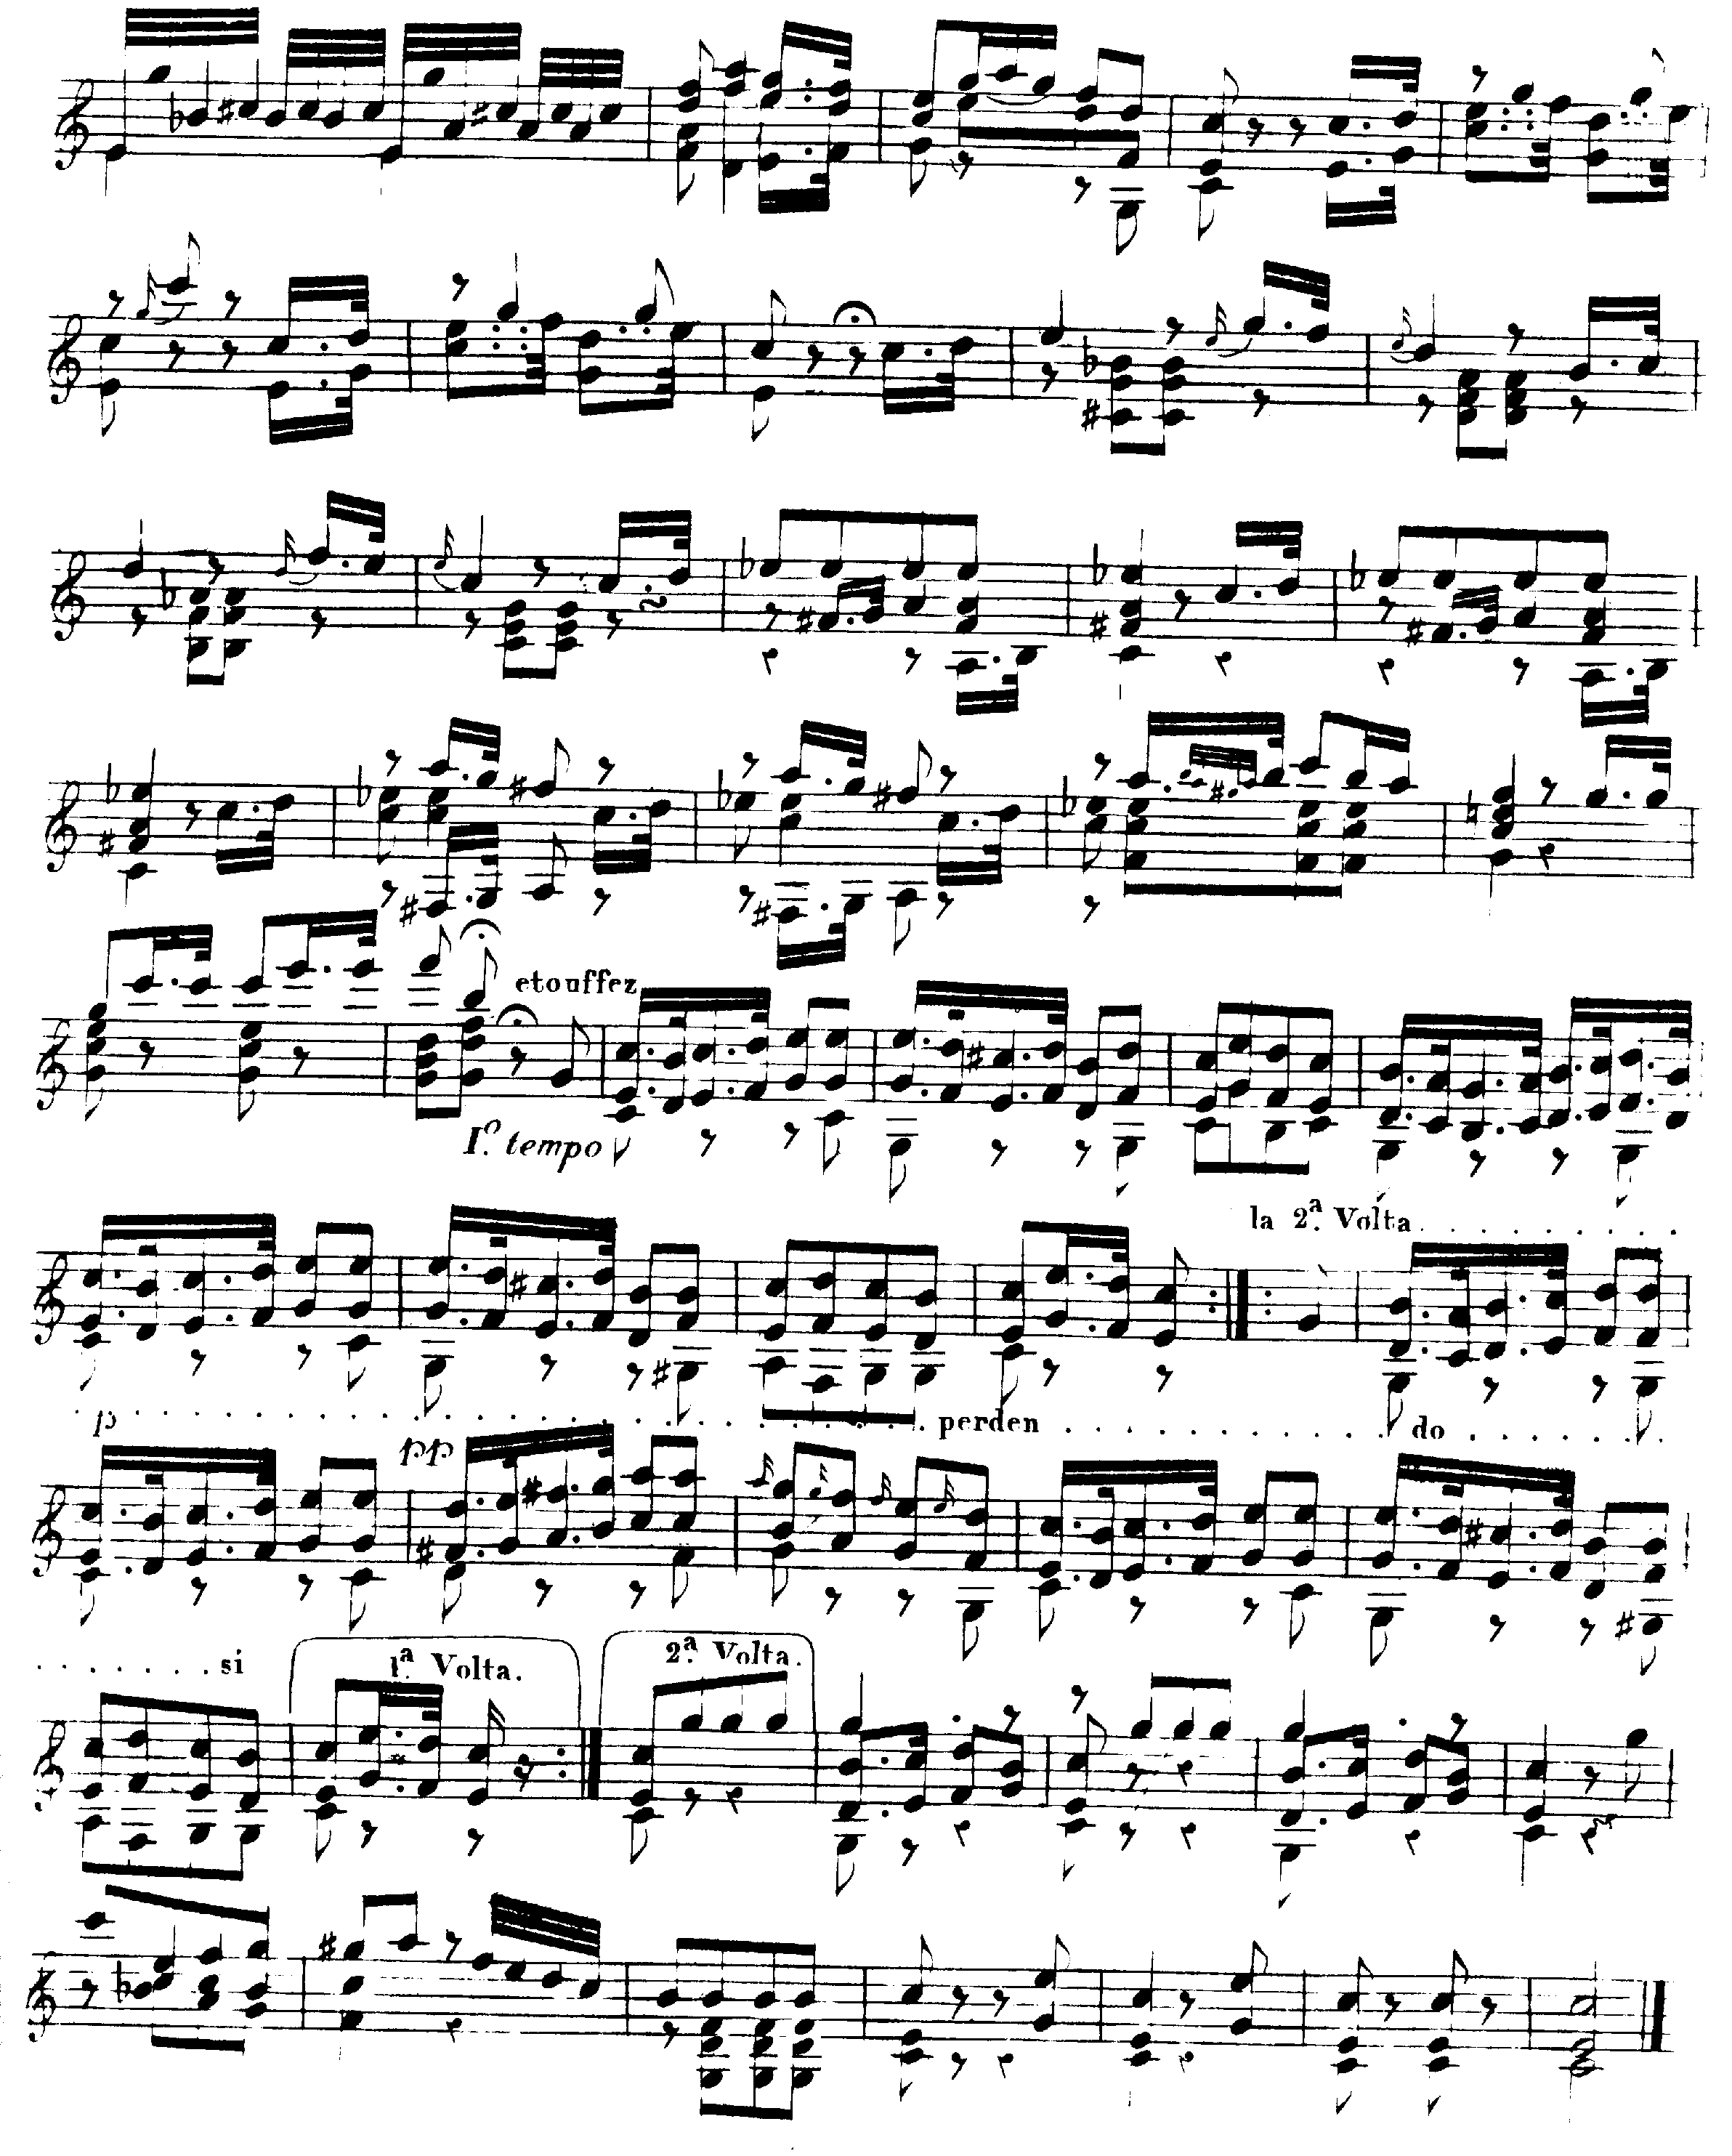 sorf-op12-fantaisiepg6.gif